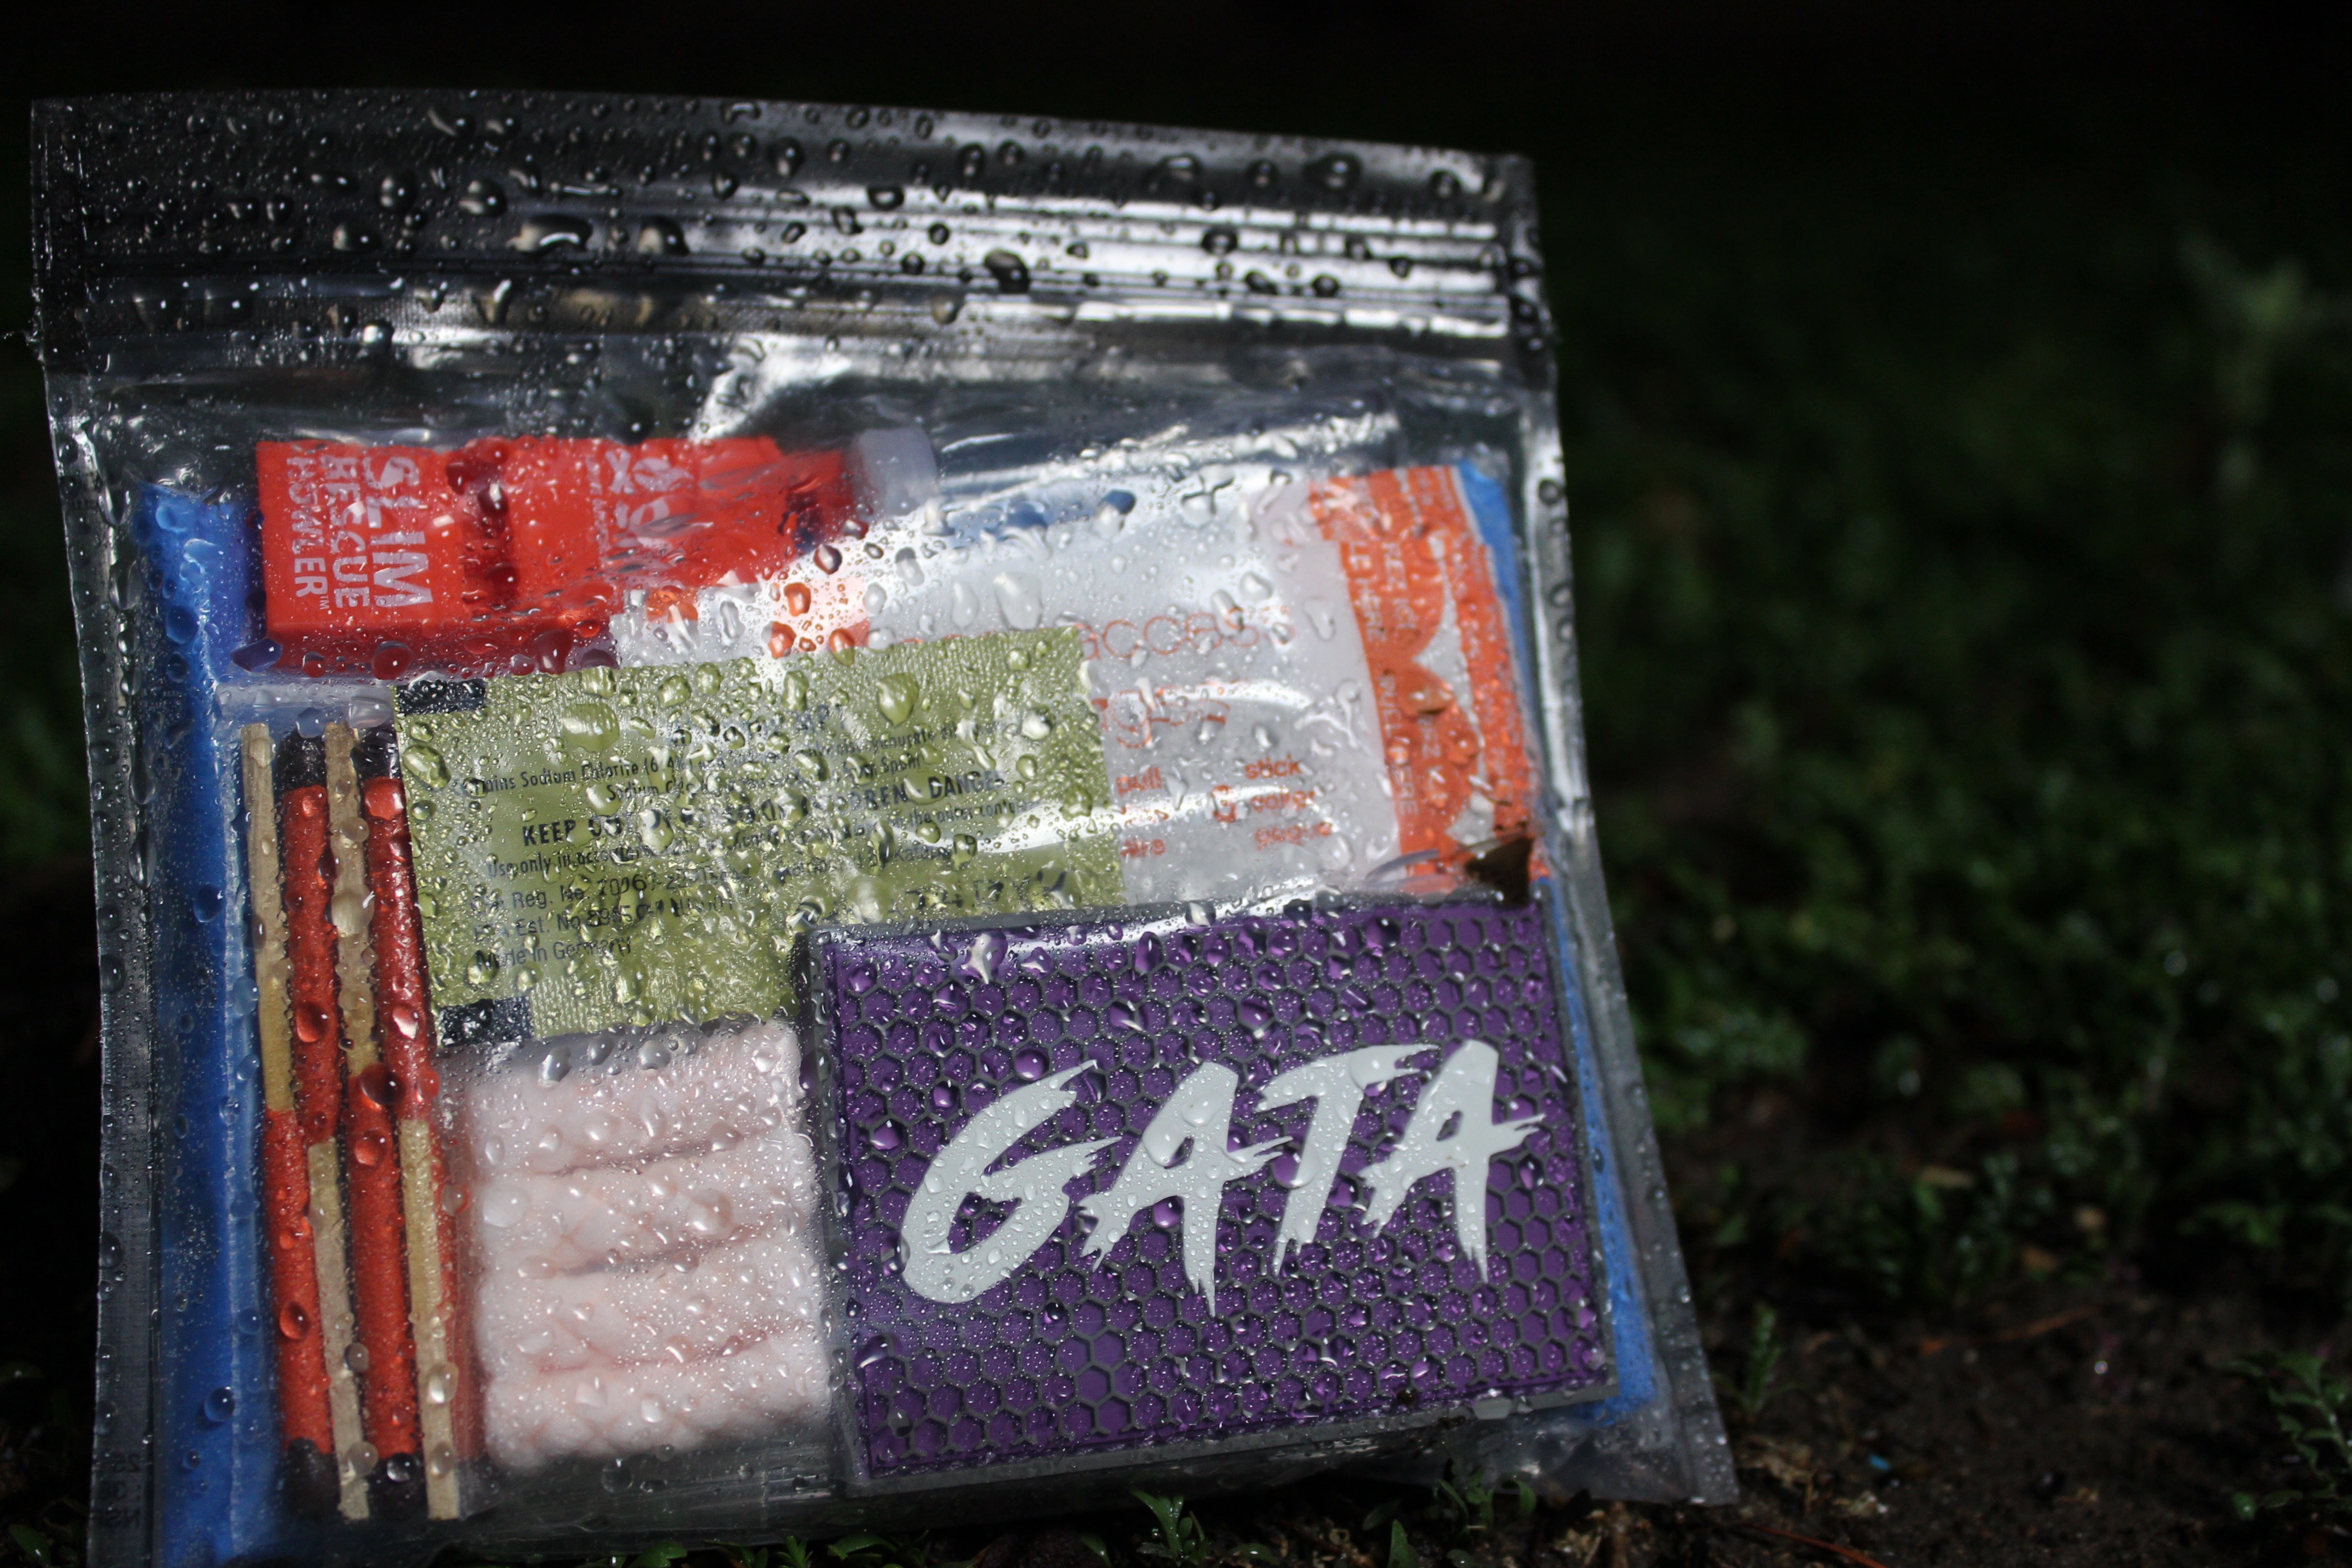 gata-product-image